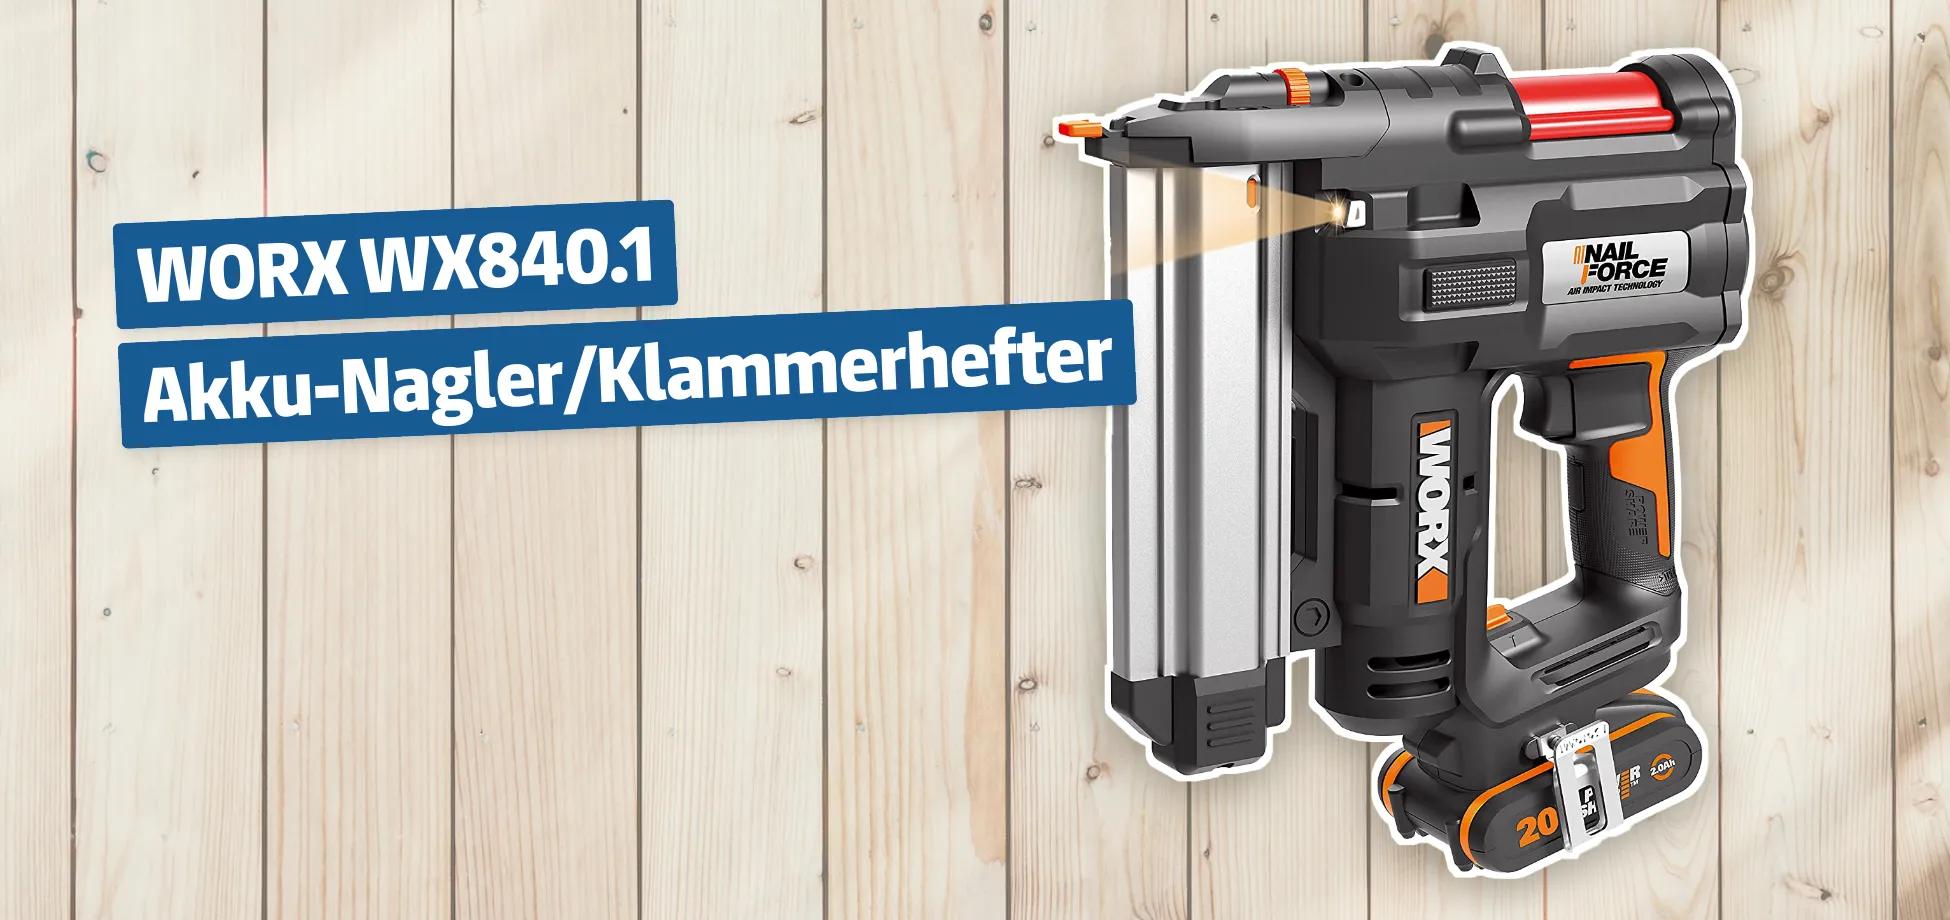 WORX WX840.1 Akku-Nagler/Klammerhefter